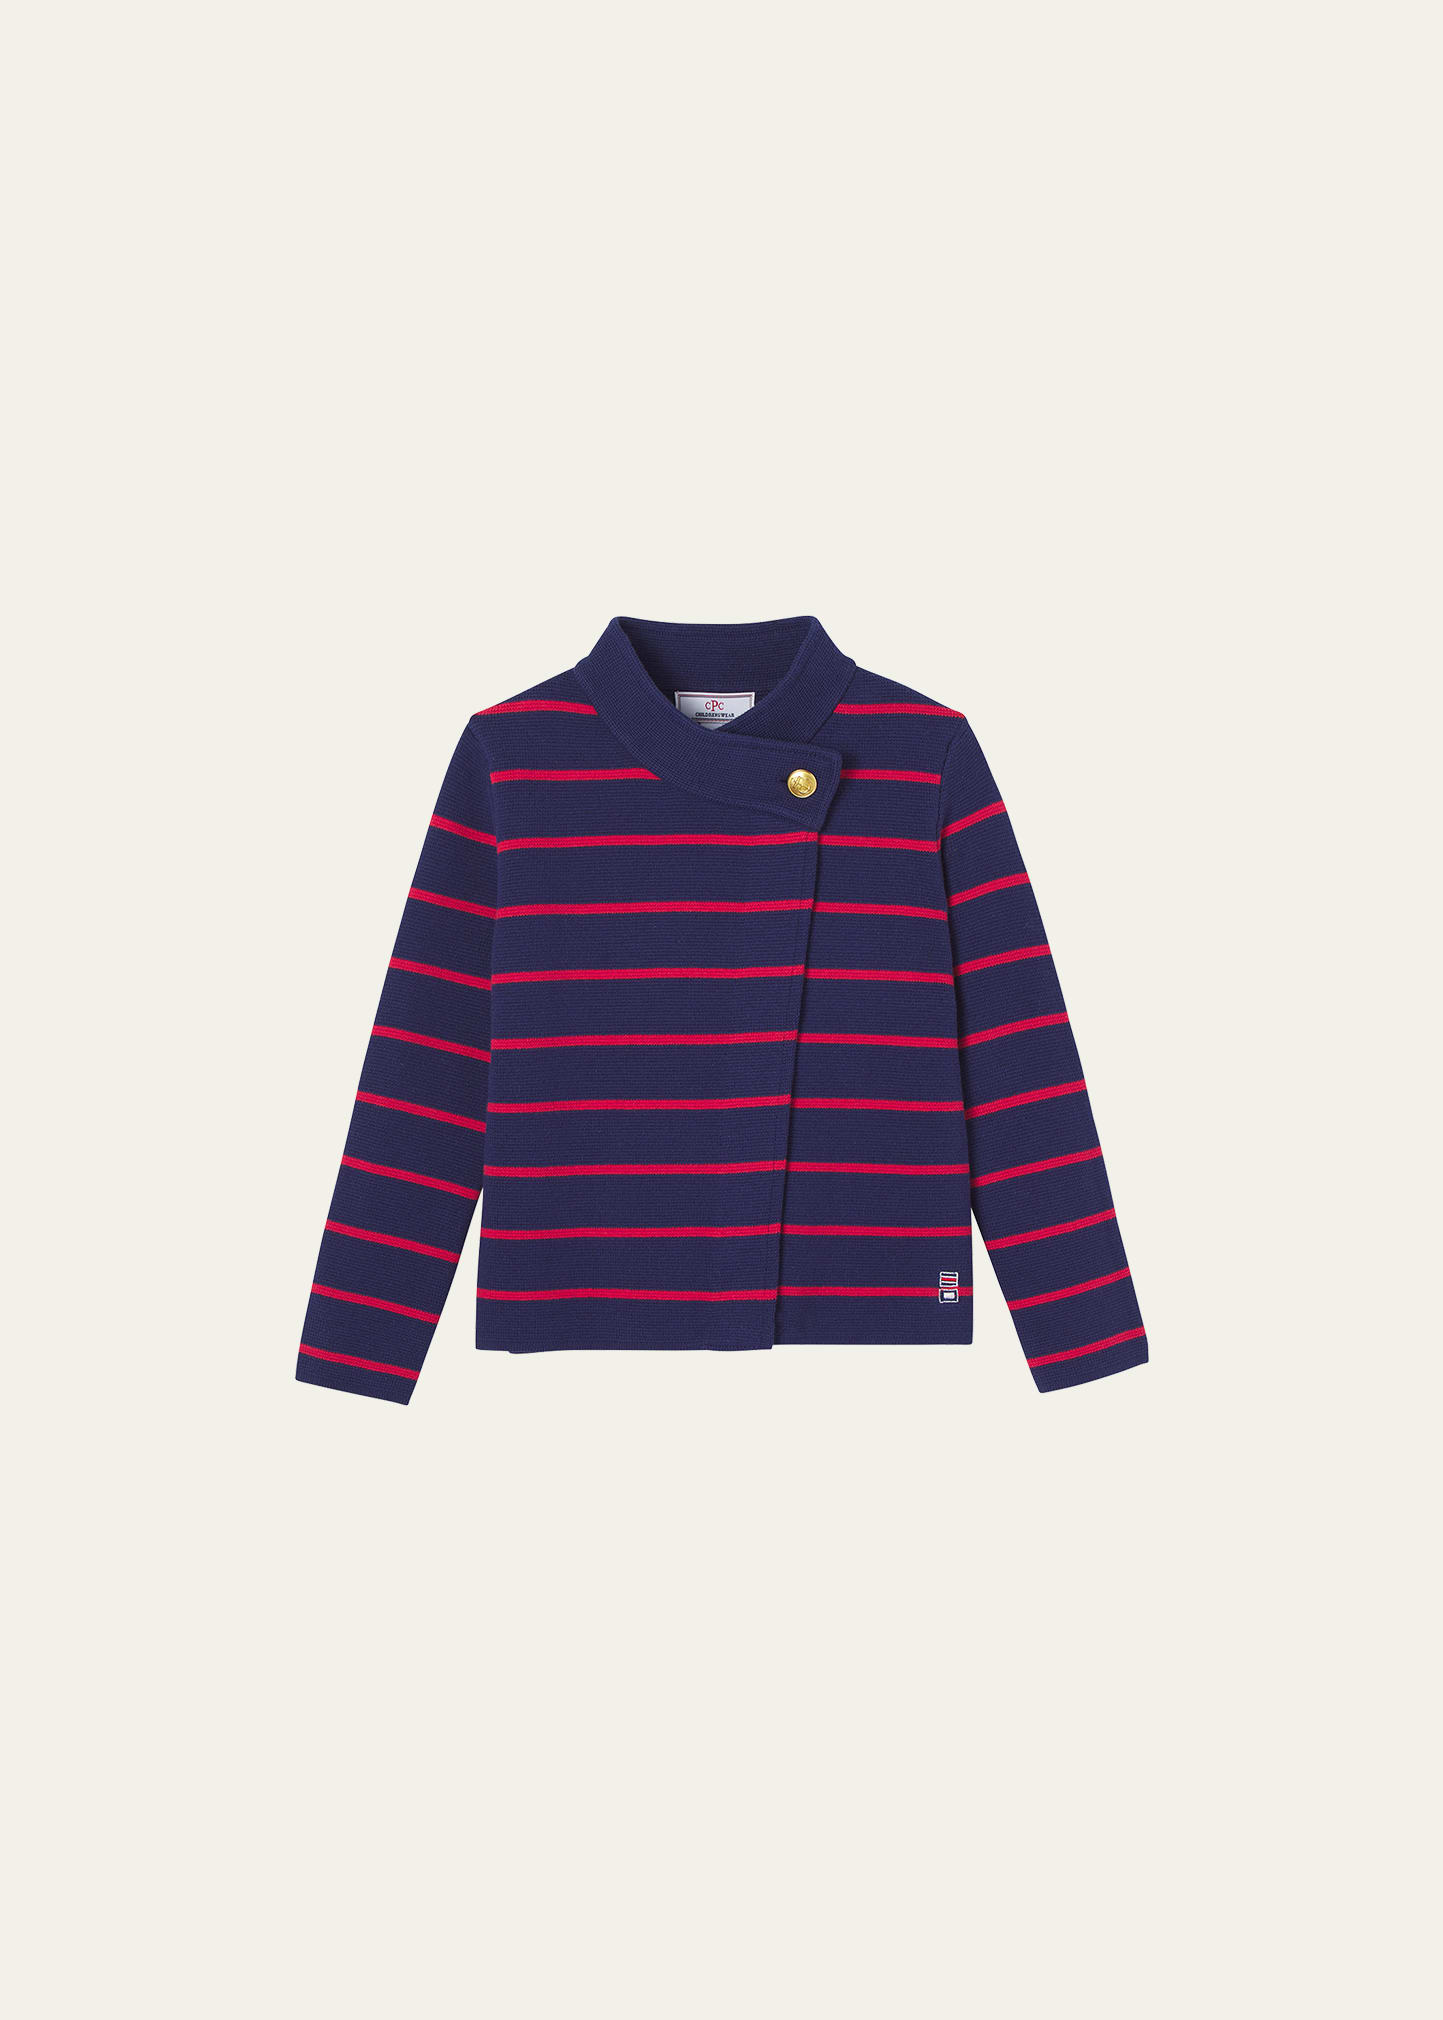 Boy's Emery Striped Sweater, Size 5-14